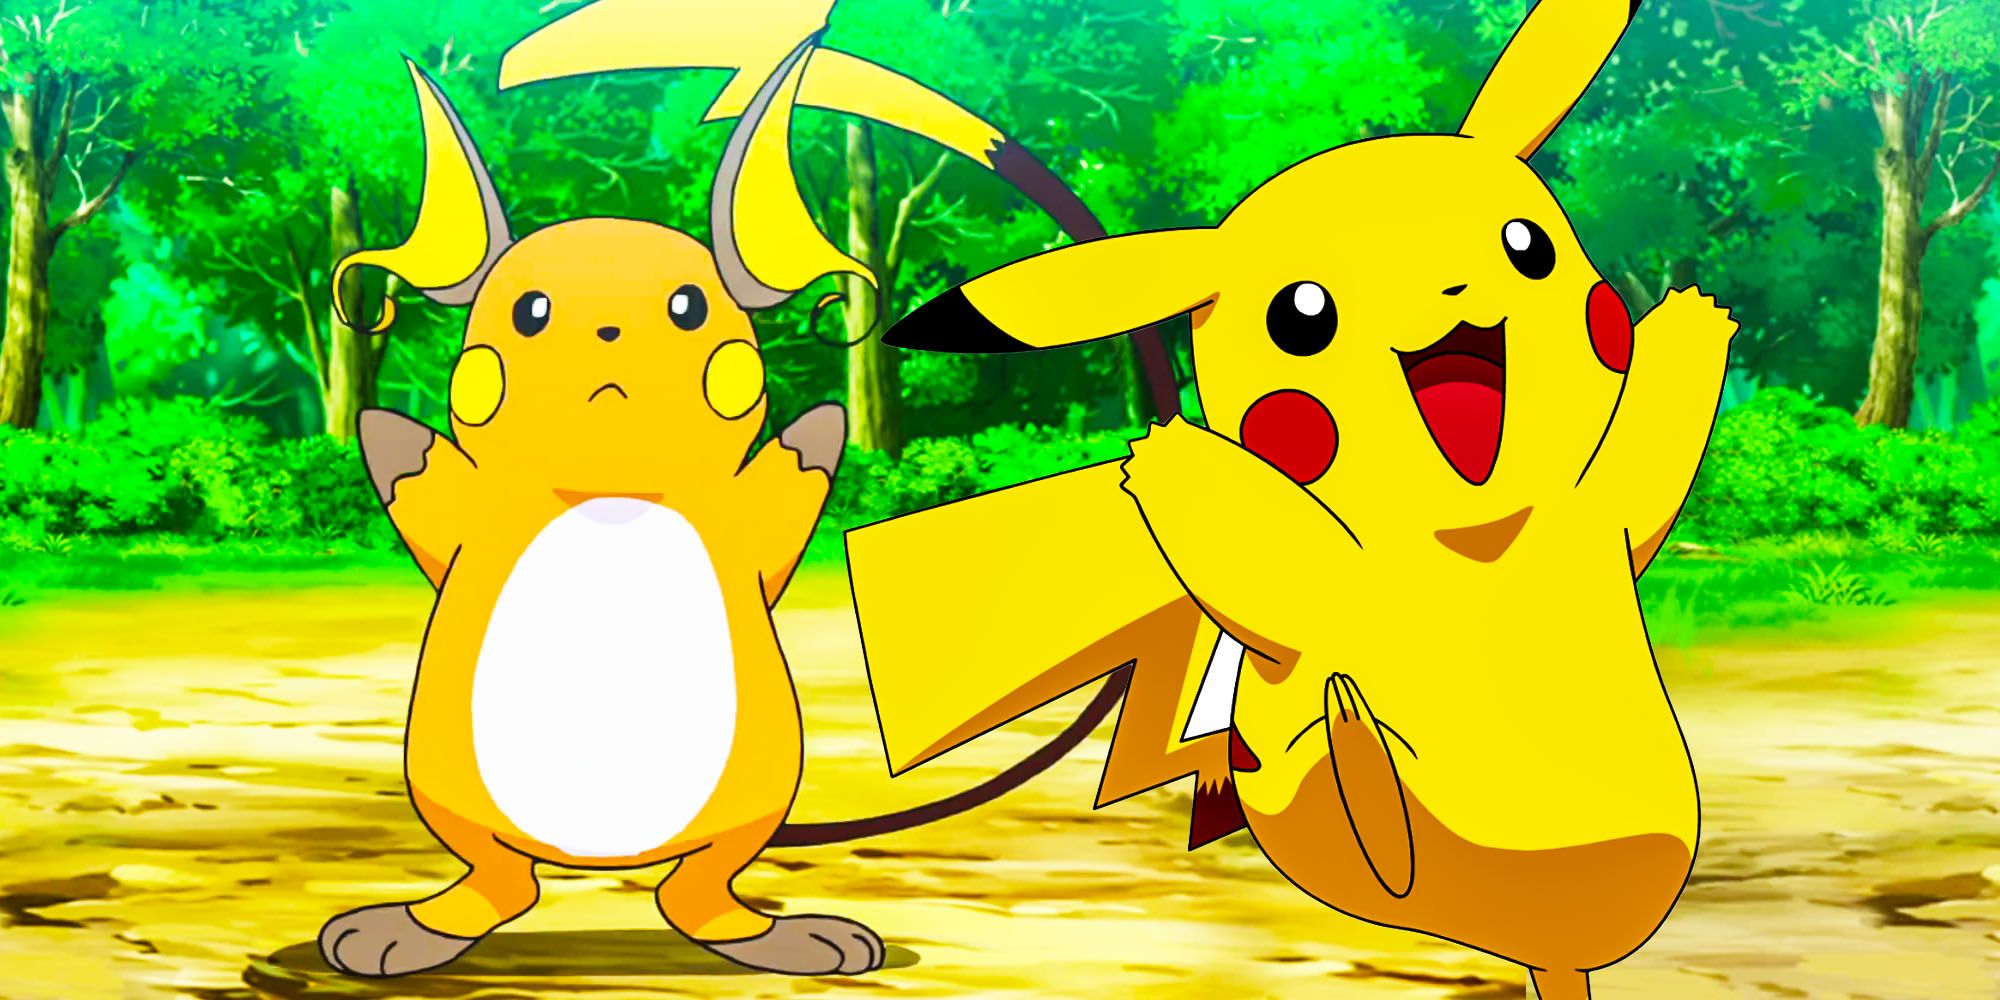 Tai sao Pikachu khong bao gio tien hoa thanh Pokemon